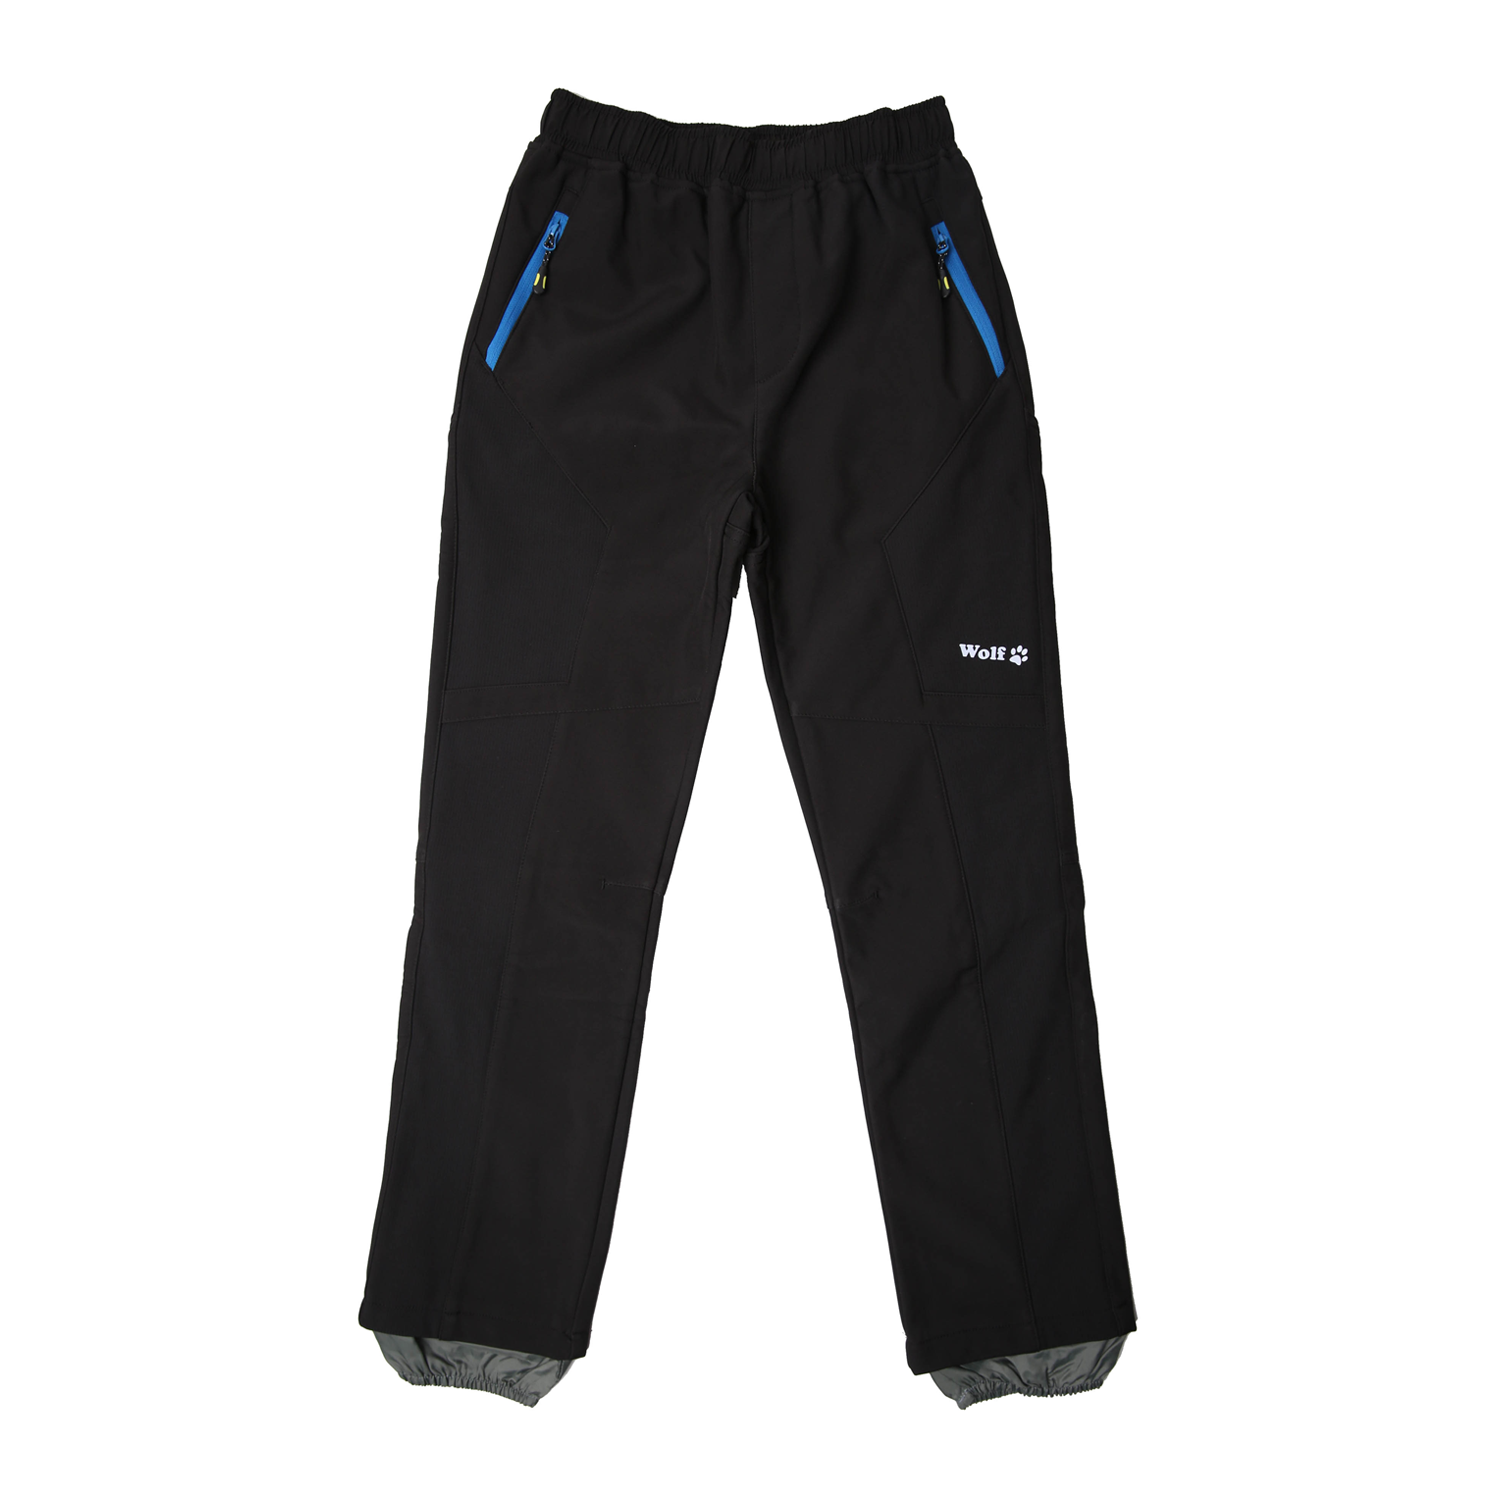 Chlapecké softshellové kalhoty, zateplené - Wolf B2394, černá Barva: Černá, Velikost: 122